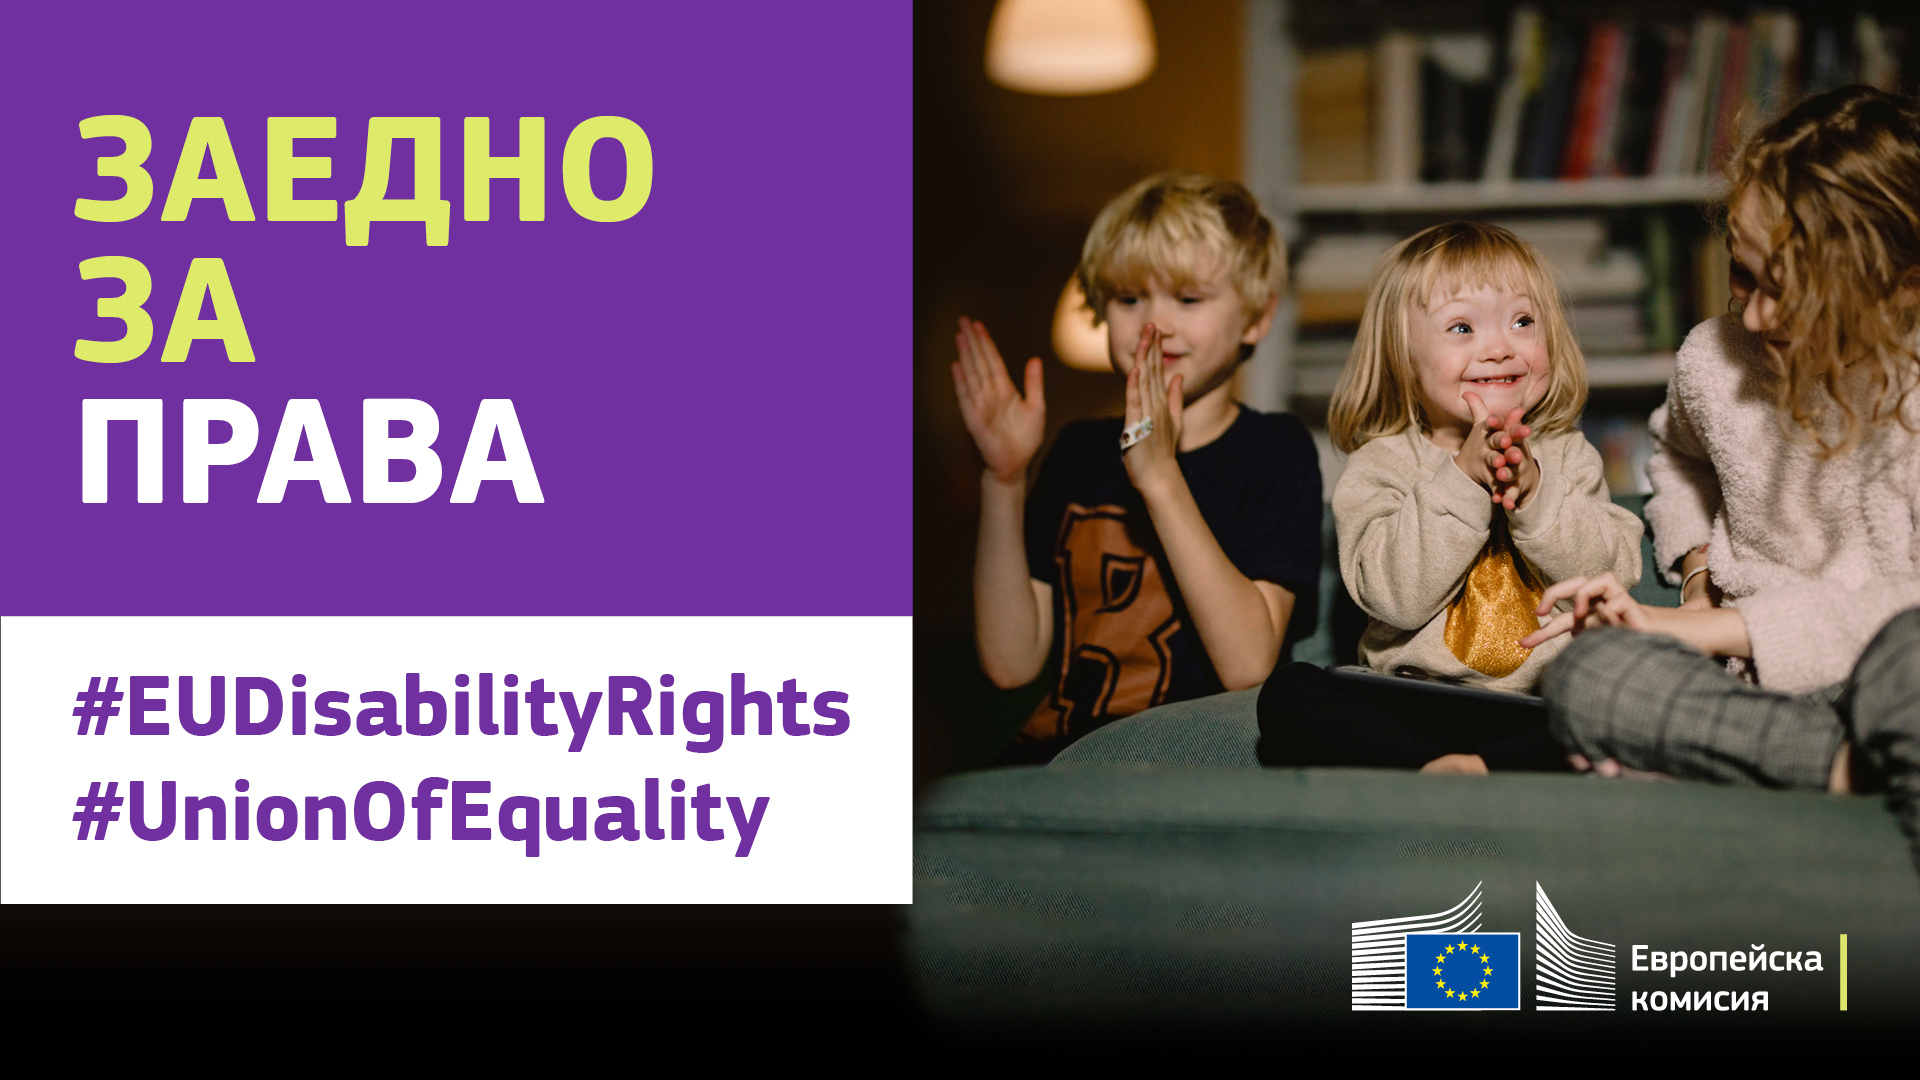 Три деца играят заедно, изпълнени с радост. Едно от децата е със синдрома на Даун. Текст, който казва: Заедно за права, #EUDisabilityRights, #UnionOfEquality.